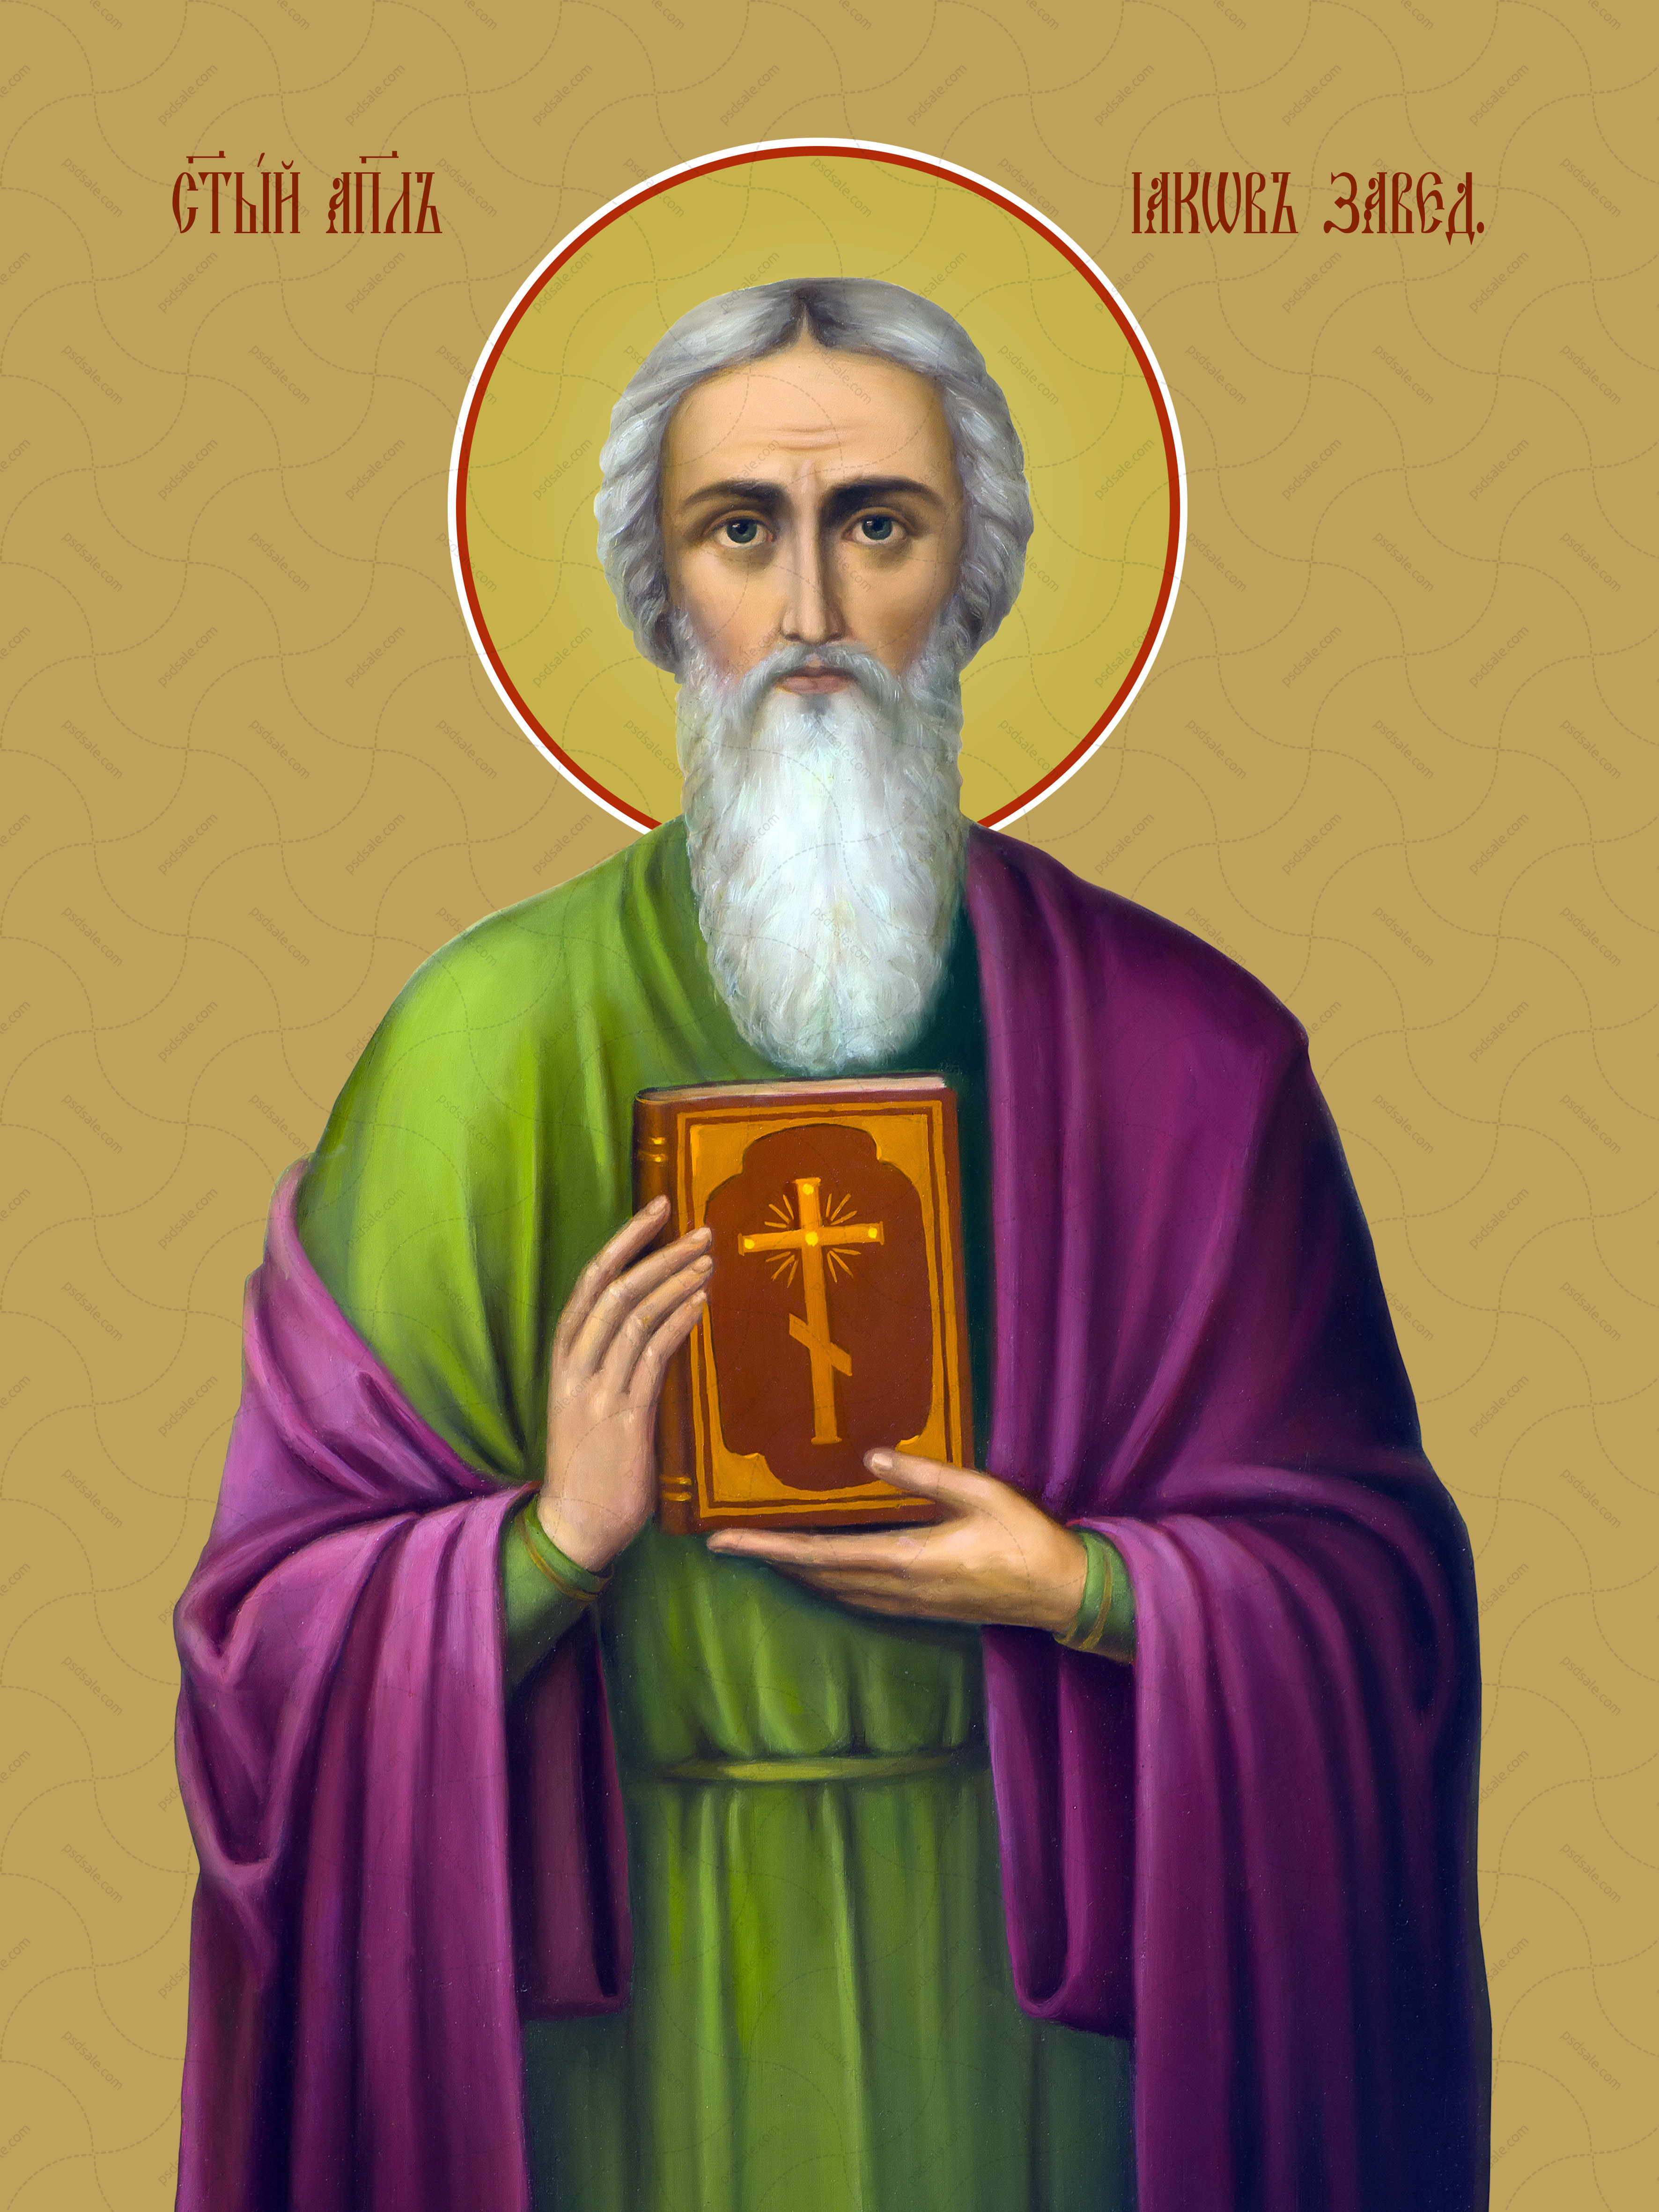 Иаков Зеведеев, святой апостол